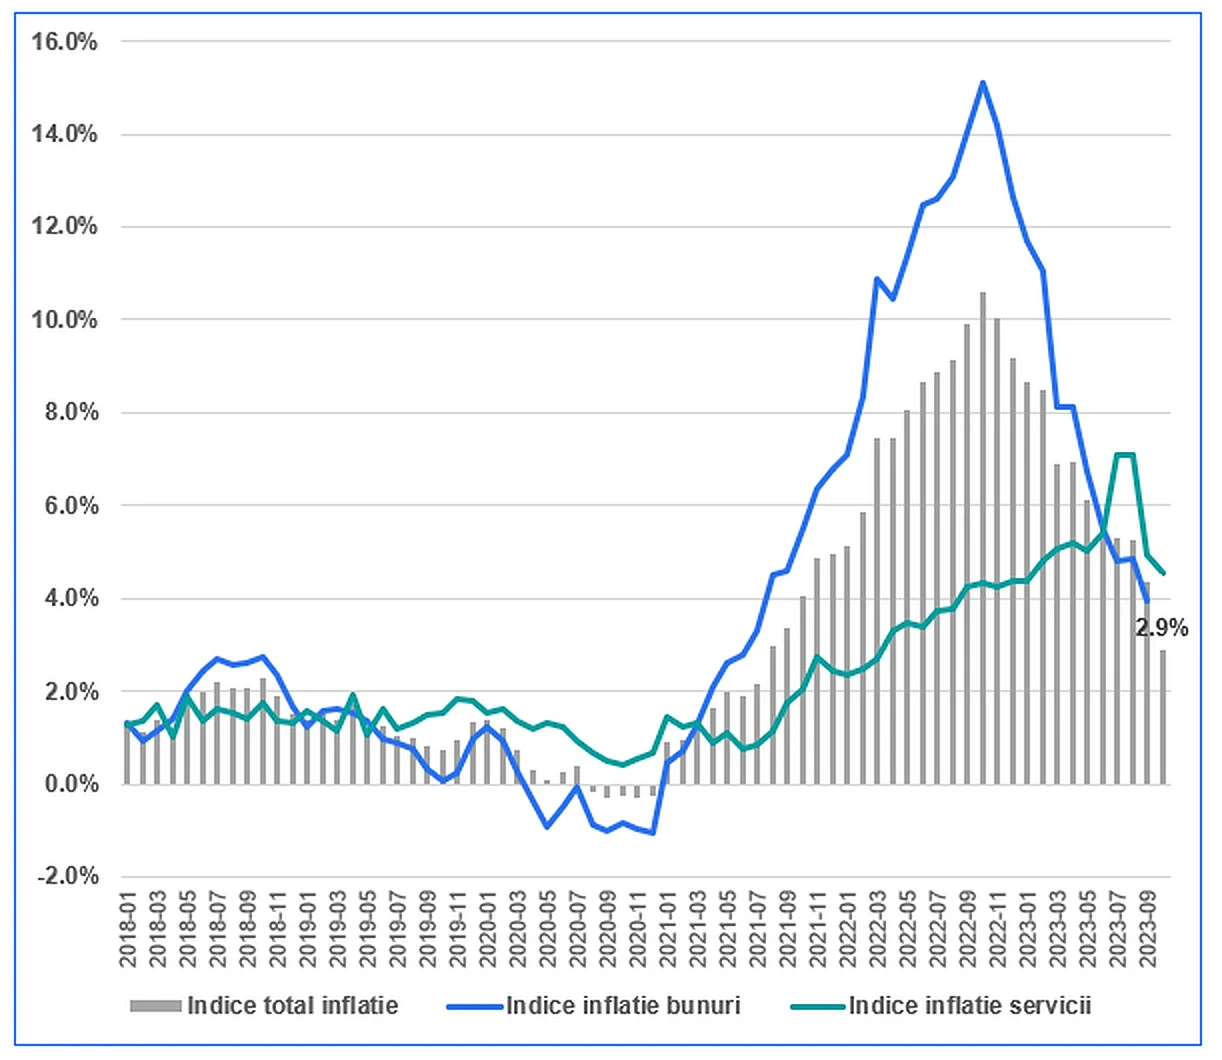 Evoluția inflației totale, respectiv a celei aferente sectorului de bunuri și a celei aferente serviciilor din Zona Euro - deficitul bugetar